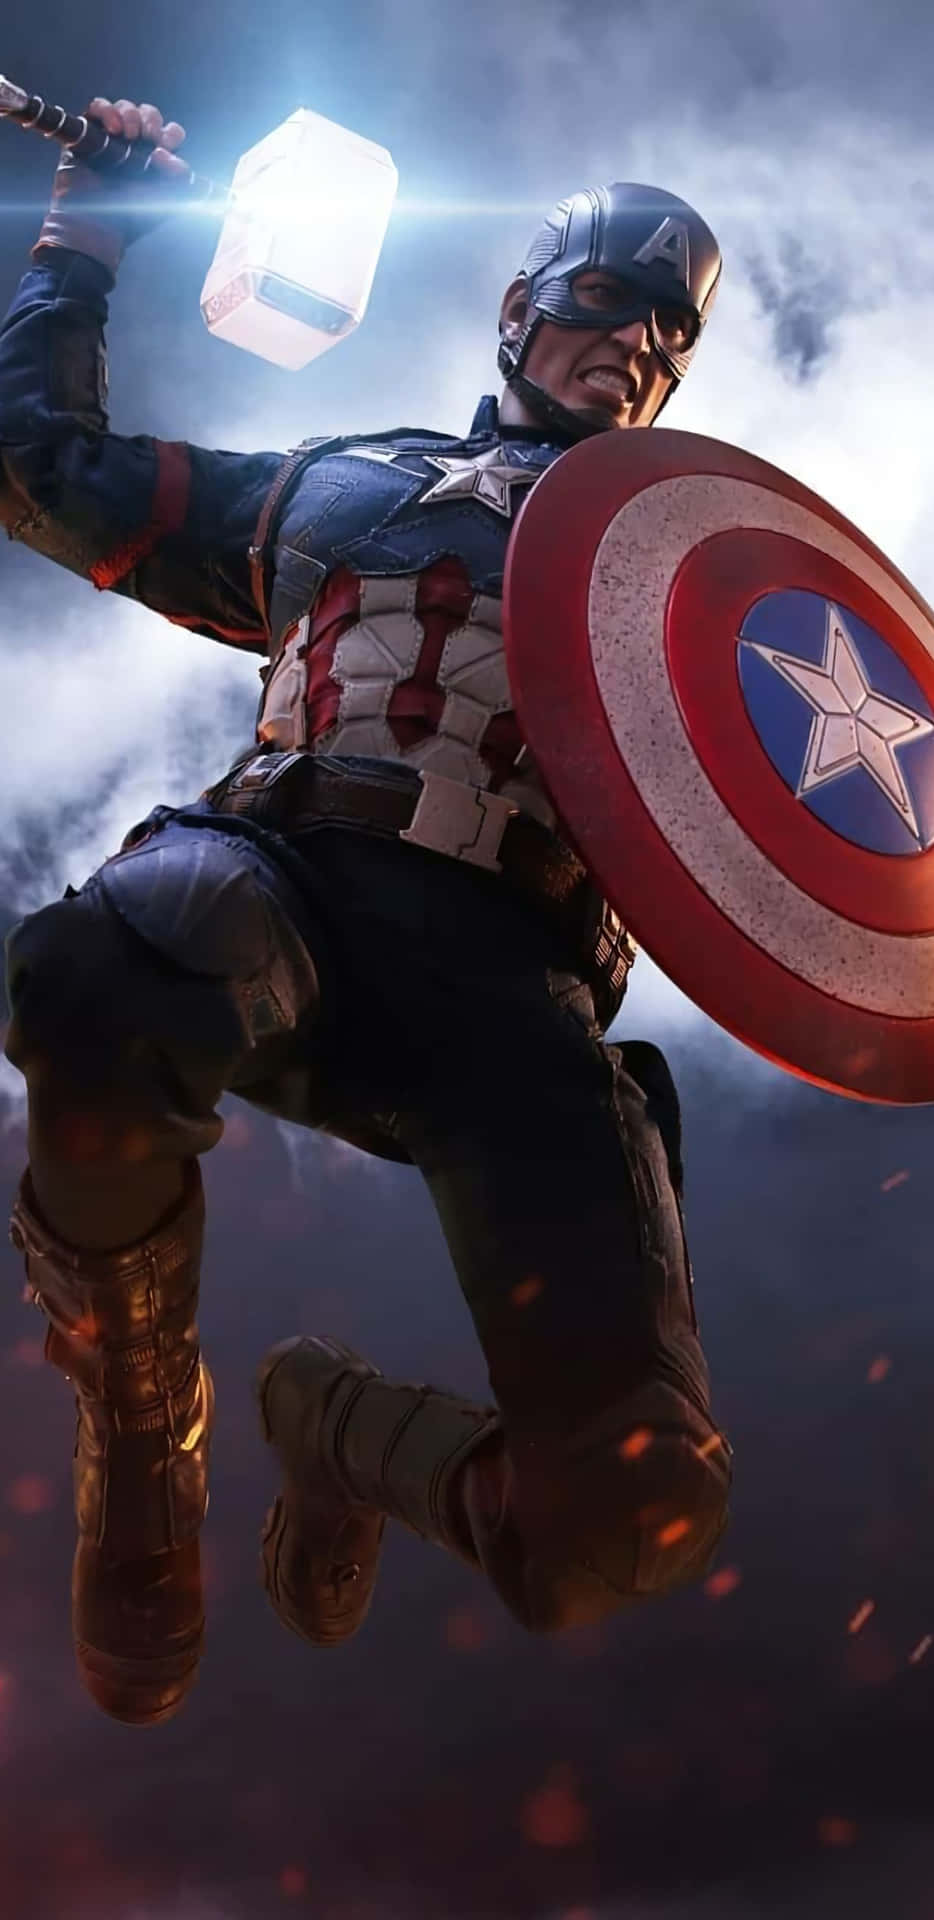 Pixel3xl Bakgrund Captain America Avengers Endgame.